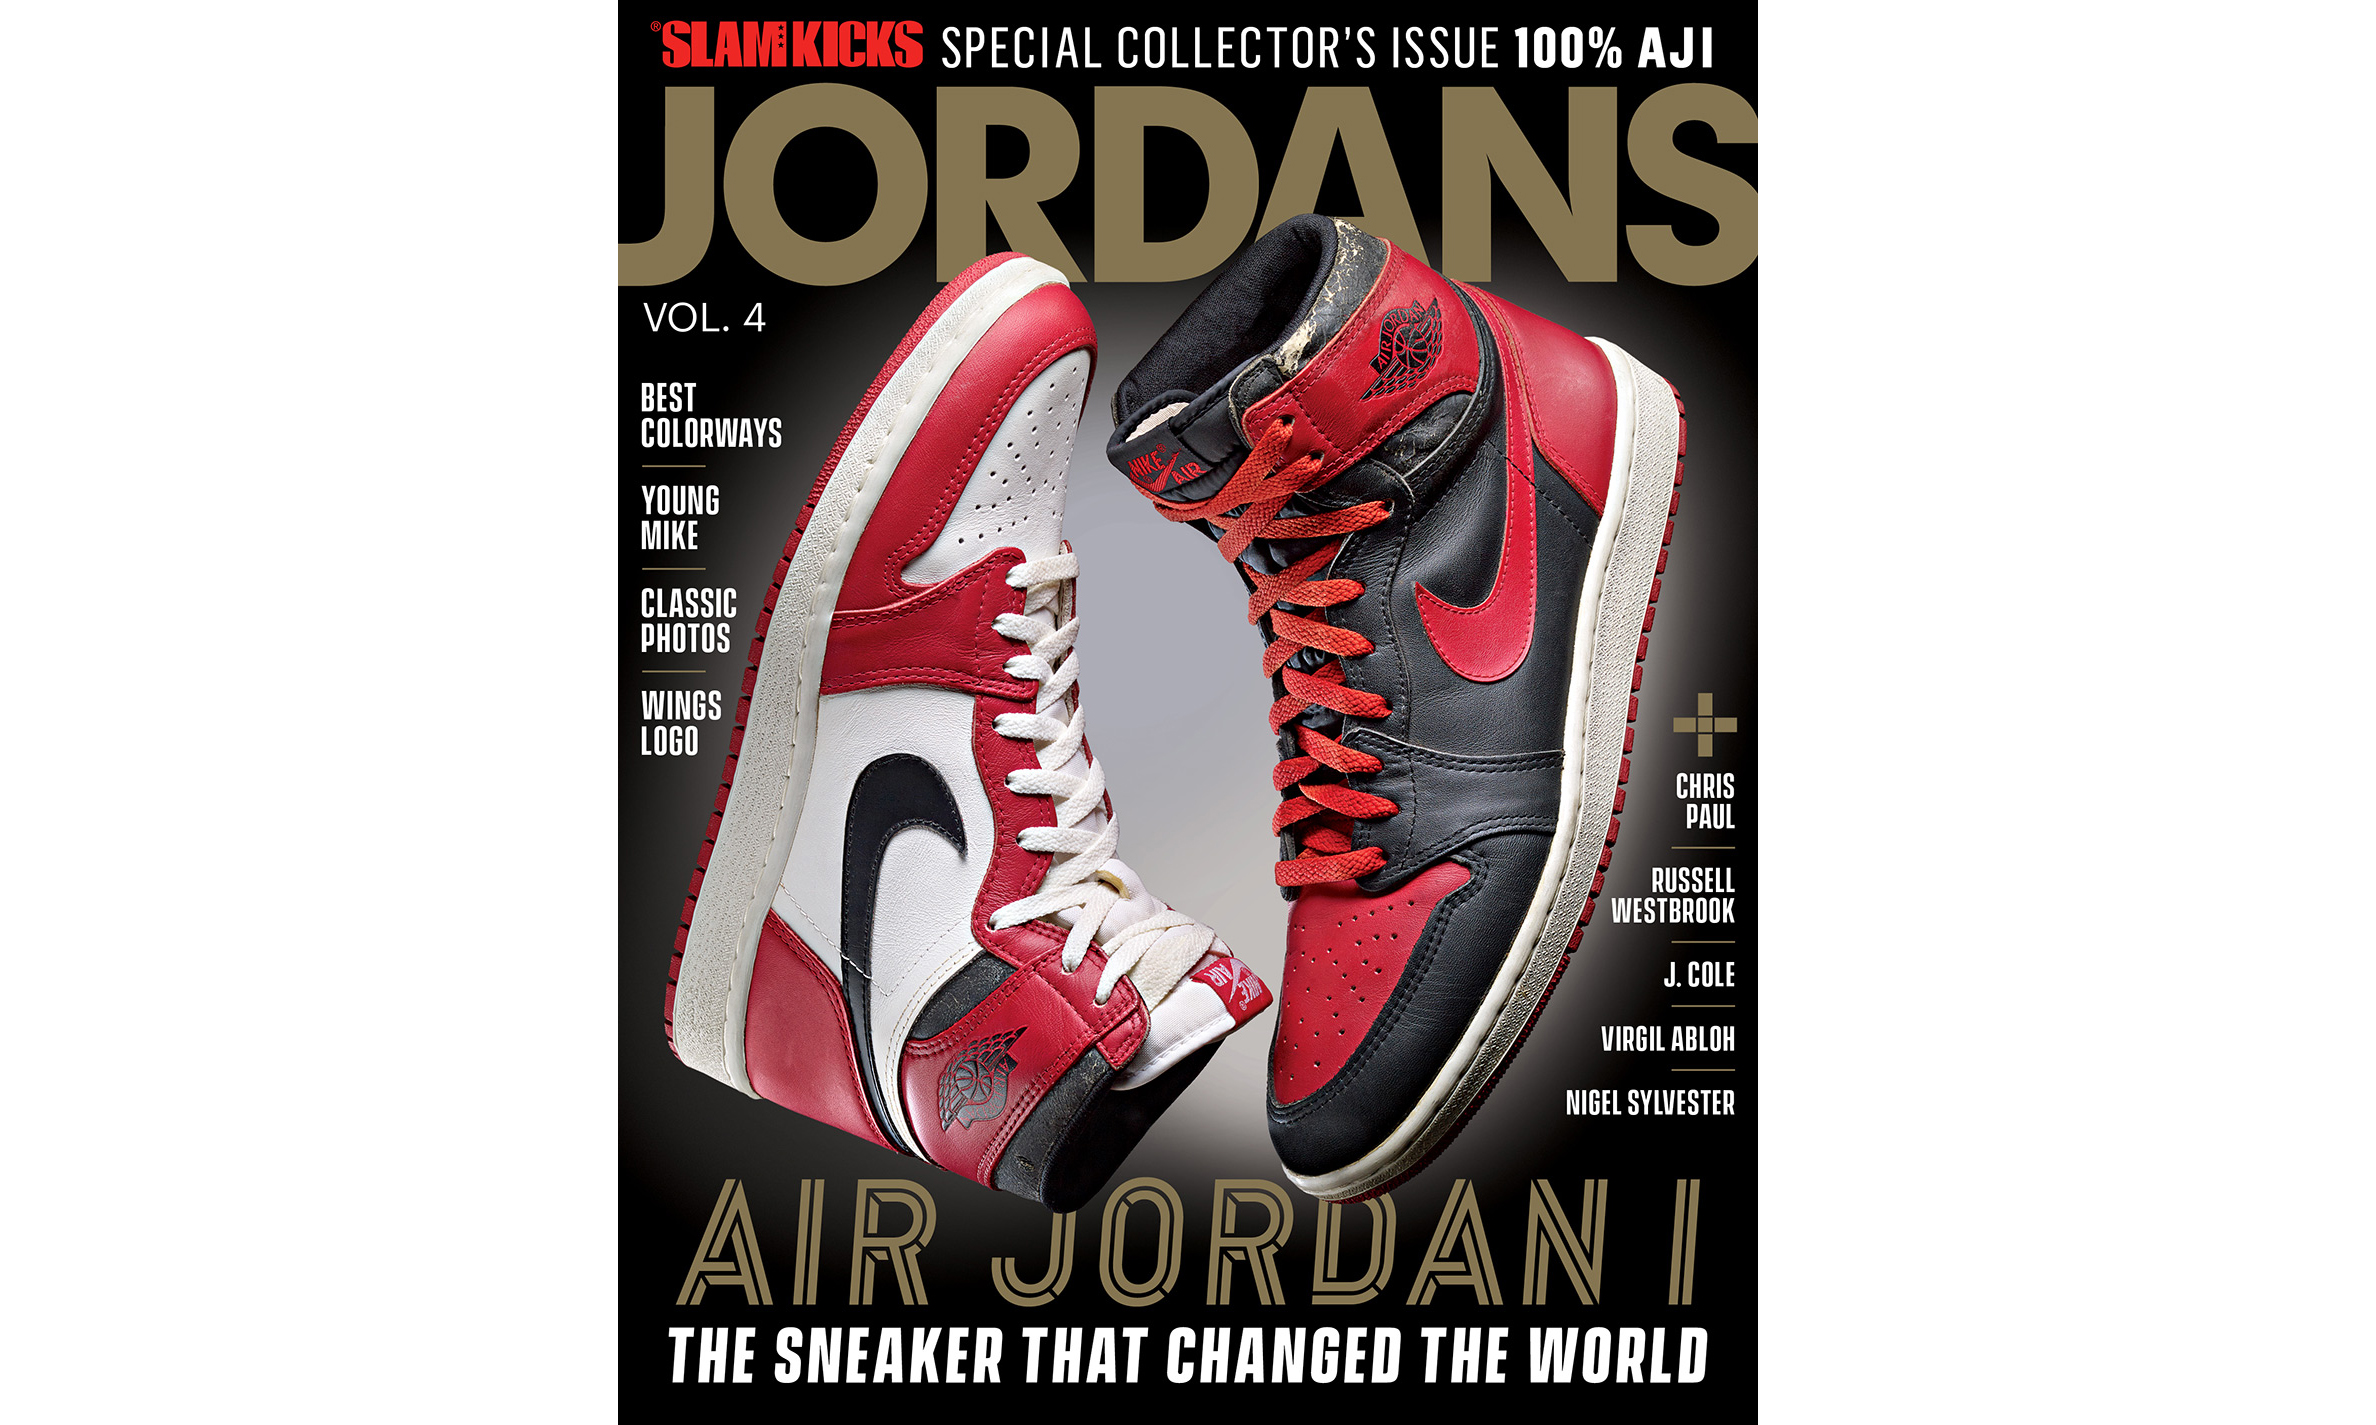 神的开山之作，《SLAM》推出 Air Jordan I 特刊